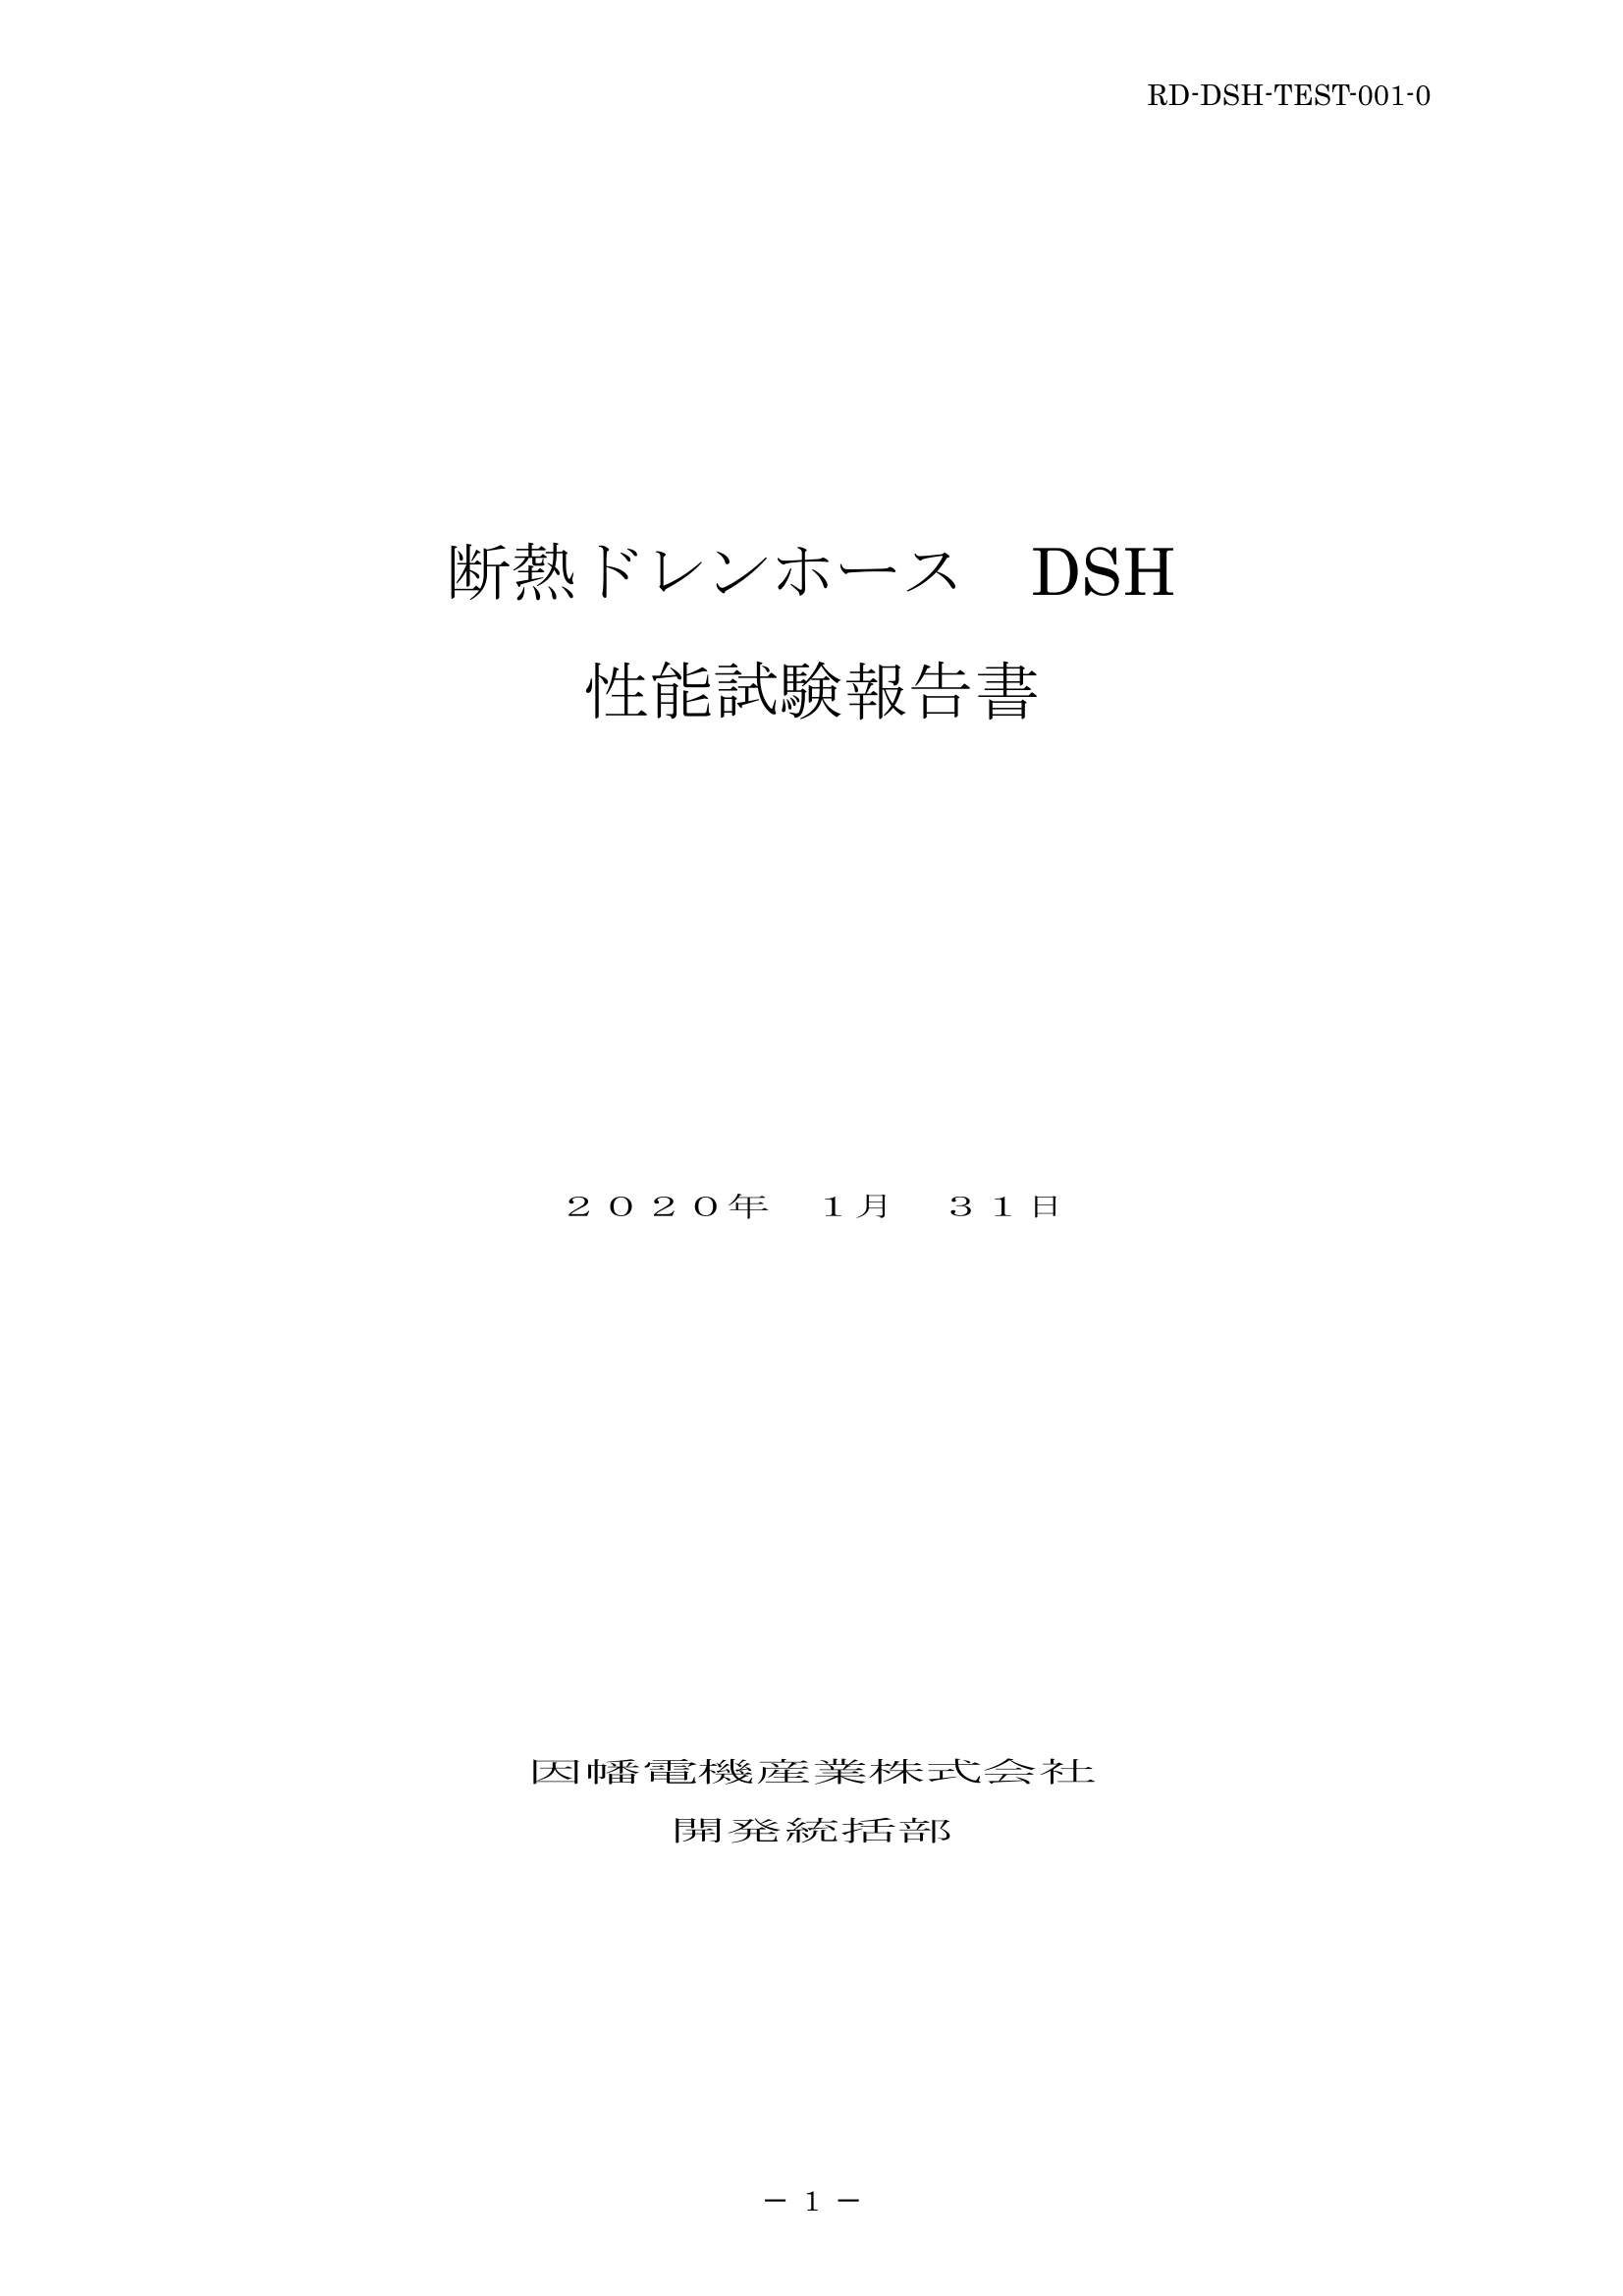 DSH_性能試験報告書_20200131.pdf